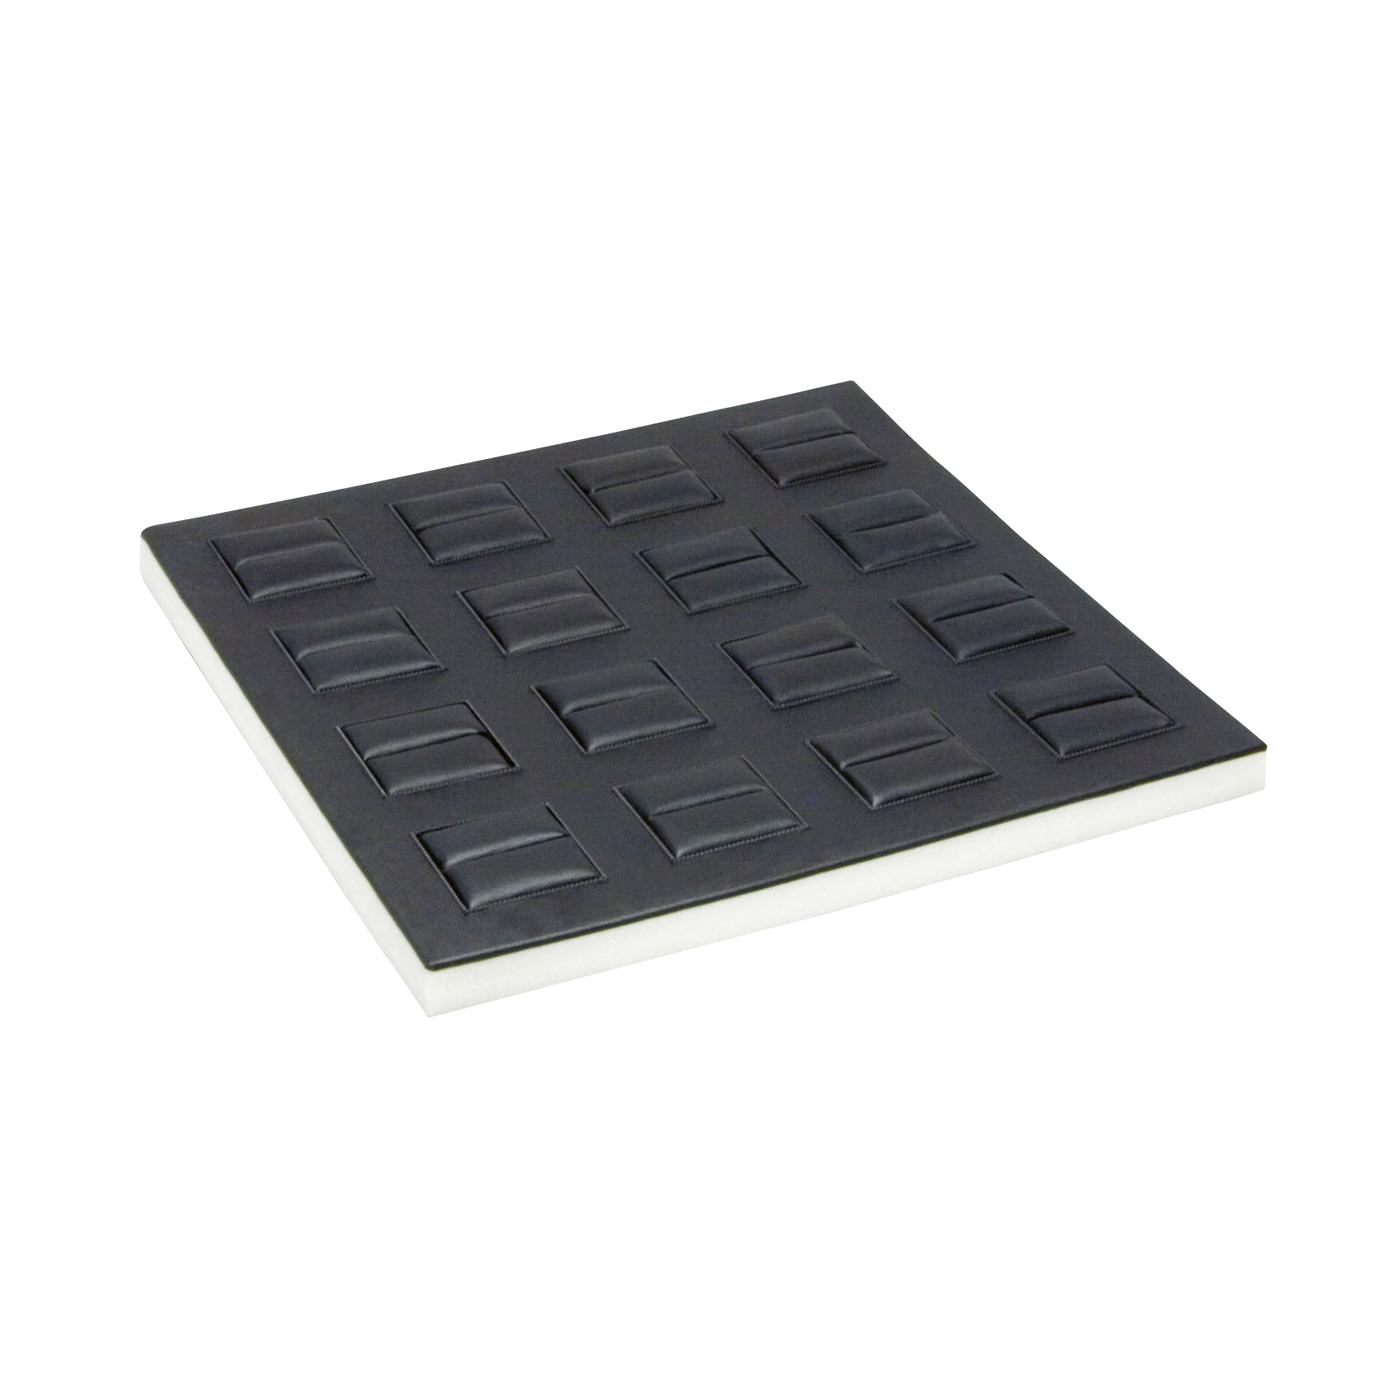 Tray System Einlage, schwarz, für 16 Ringe, 224 x 224 mm - 1 Stück